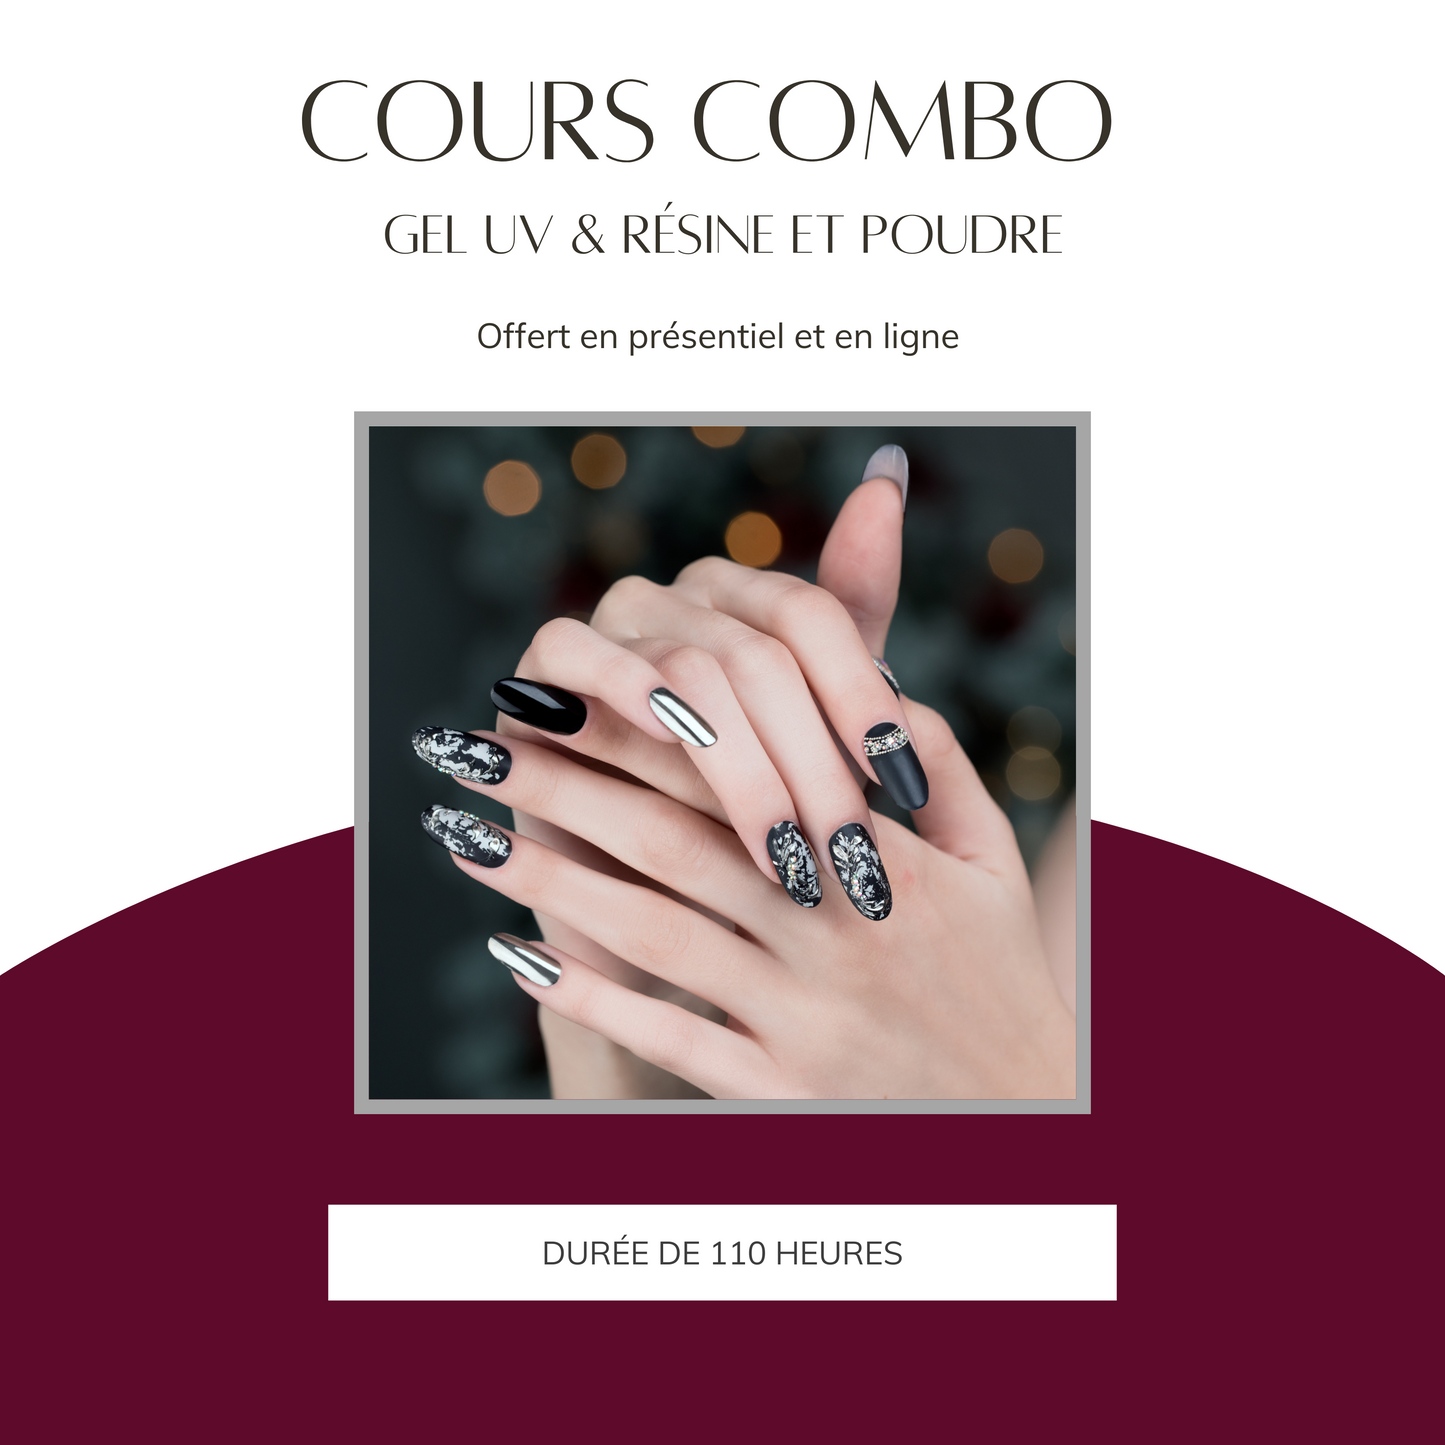 Cours Combo Gel Uv & Résine et Poudre (6726928465986)